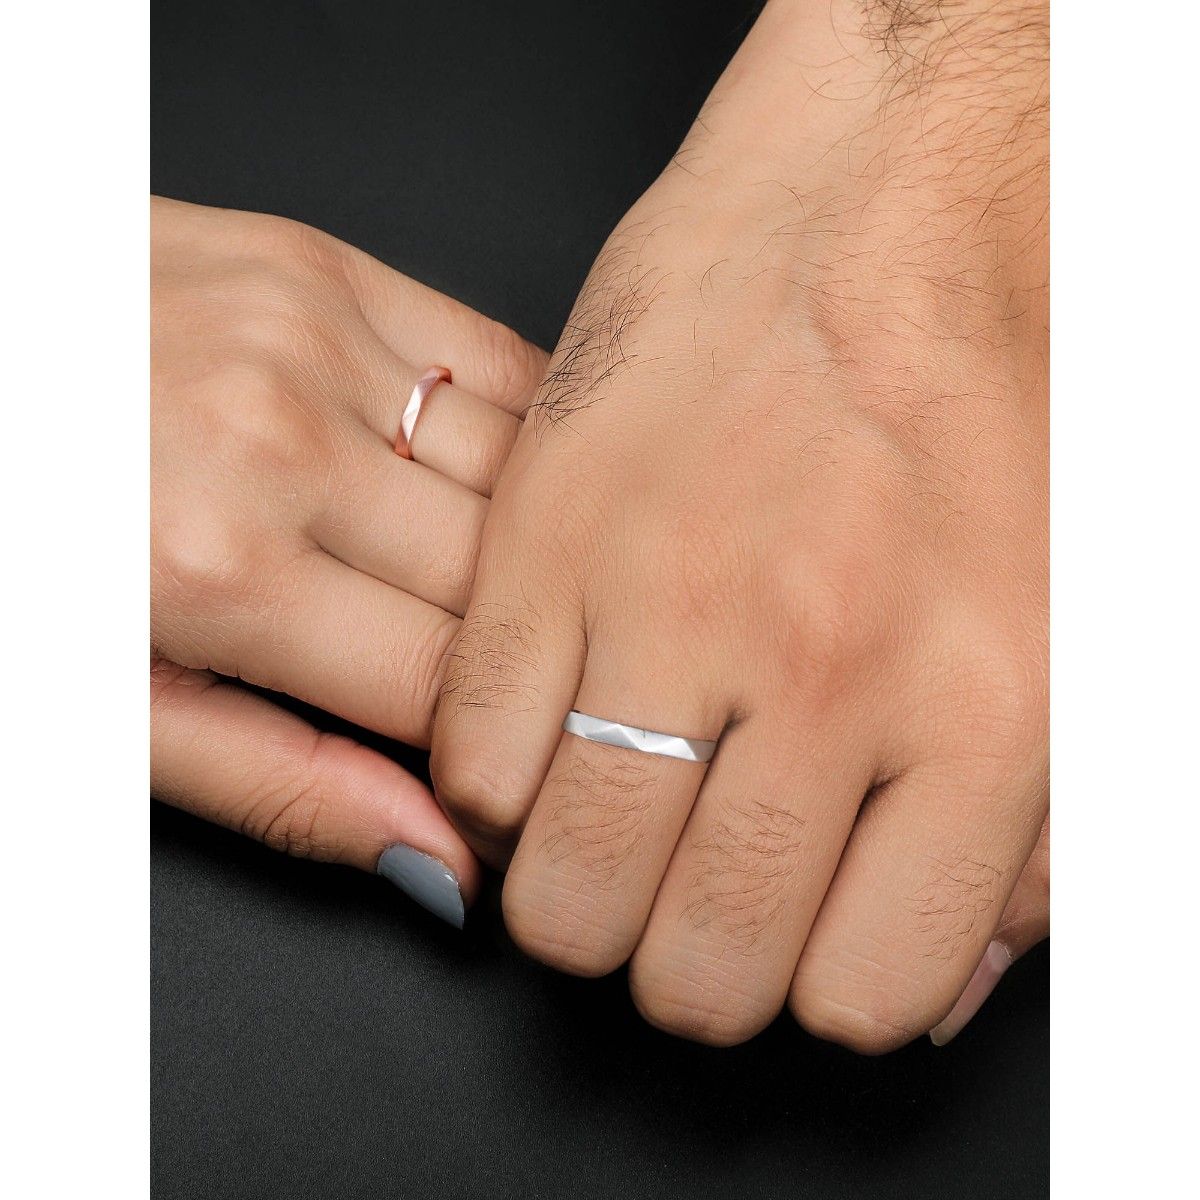 2.25 Ctw Wedding Ring Set. Sterling Silver Wedding Rings. 1 Carat